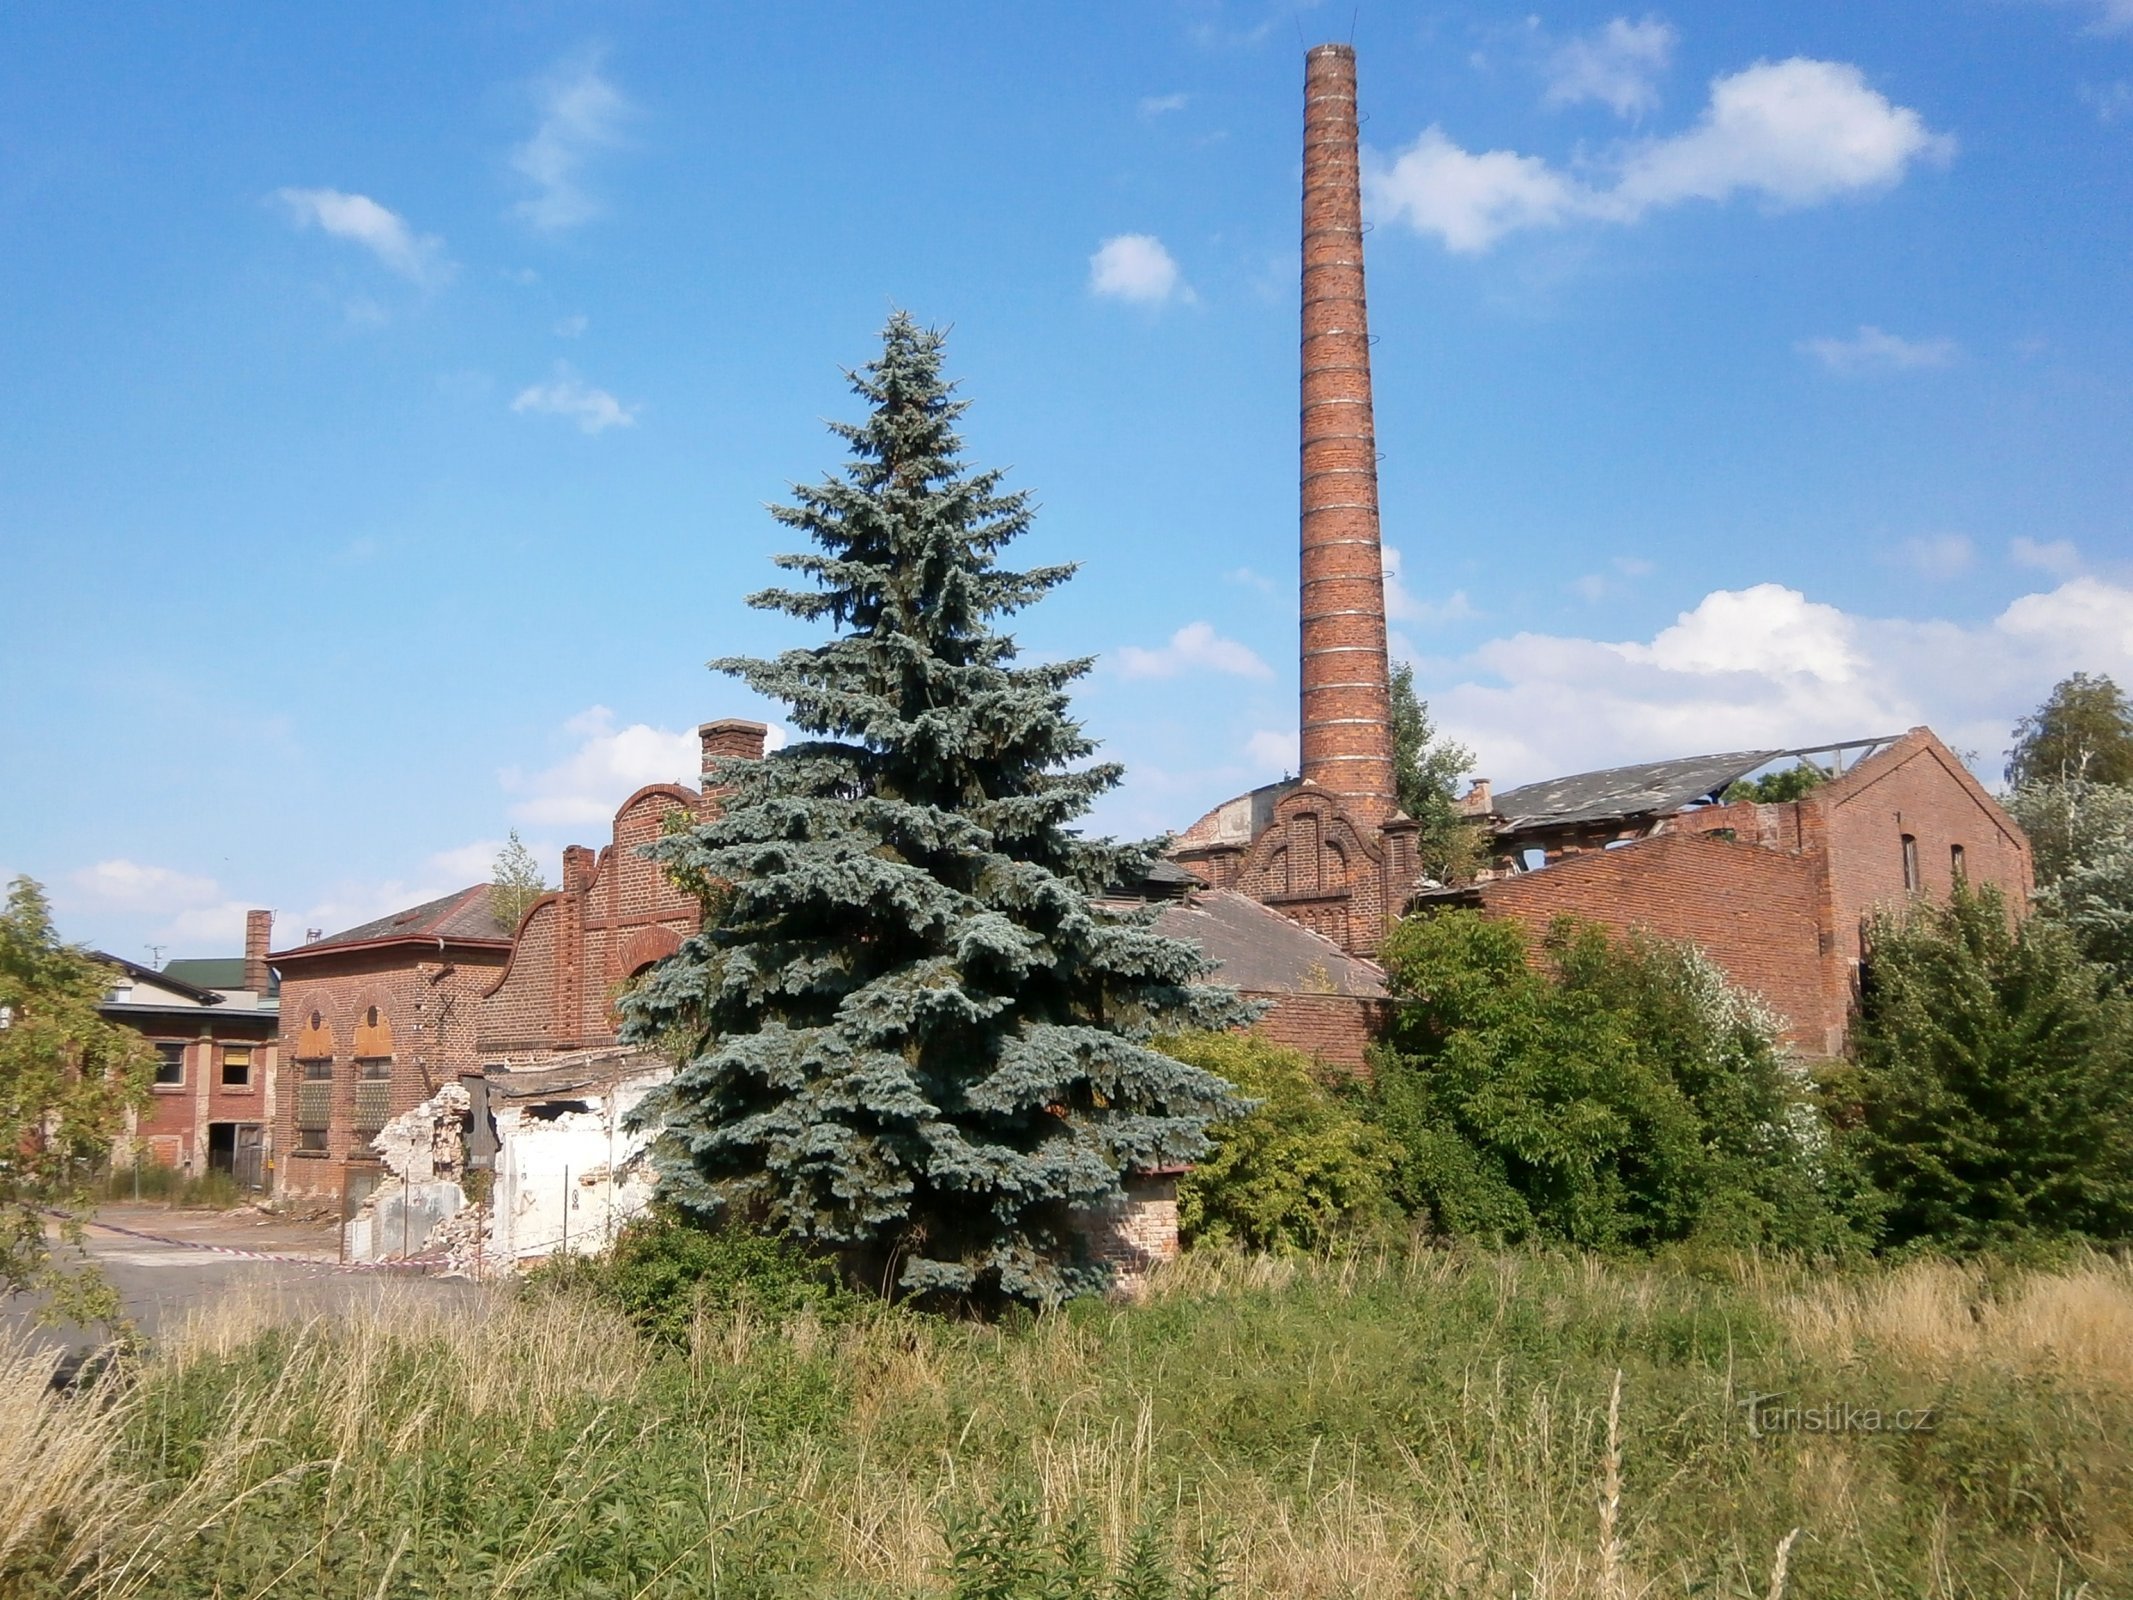 Tannerie à Kukleny avant sa démolition (Hradec Králové, 19.6.2014)